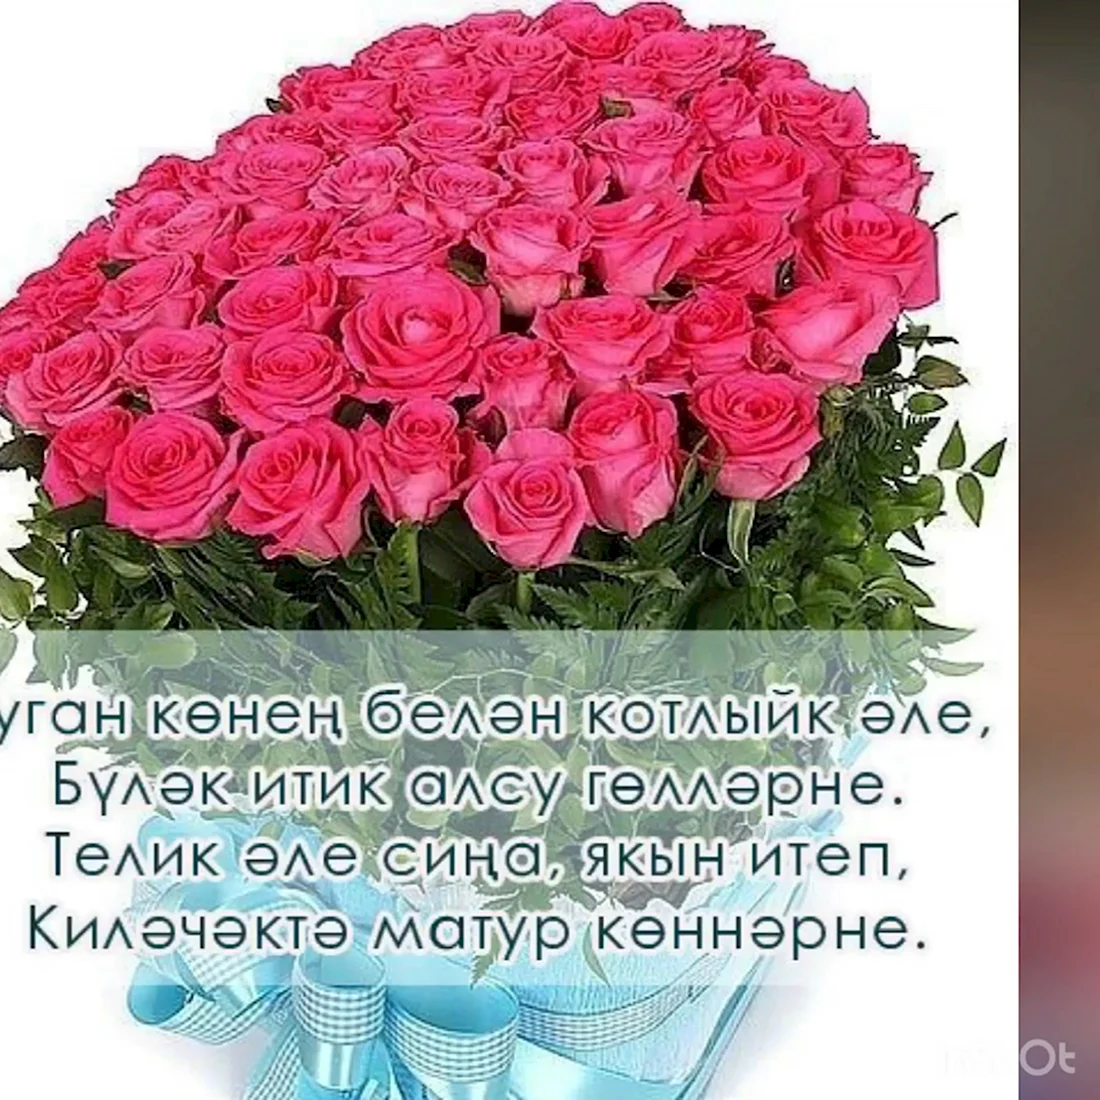 Татарские поздравления с днем рождения. Открытка для мужчины